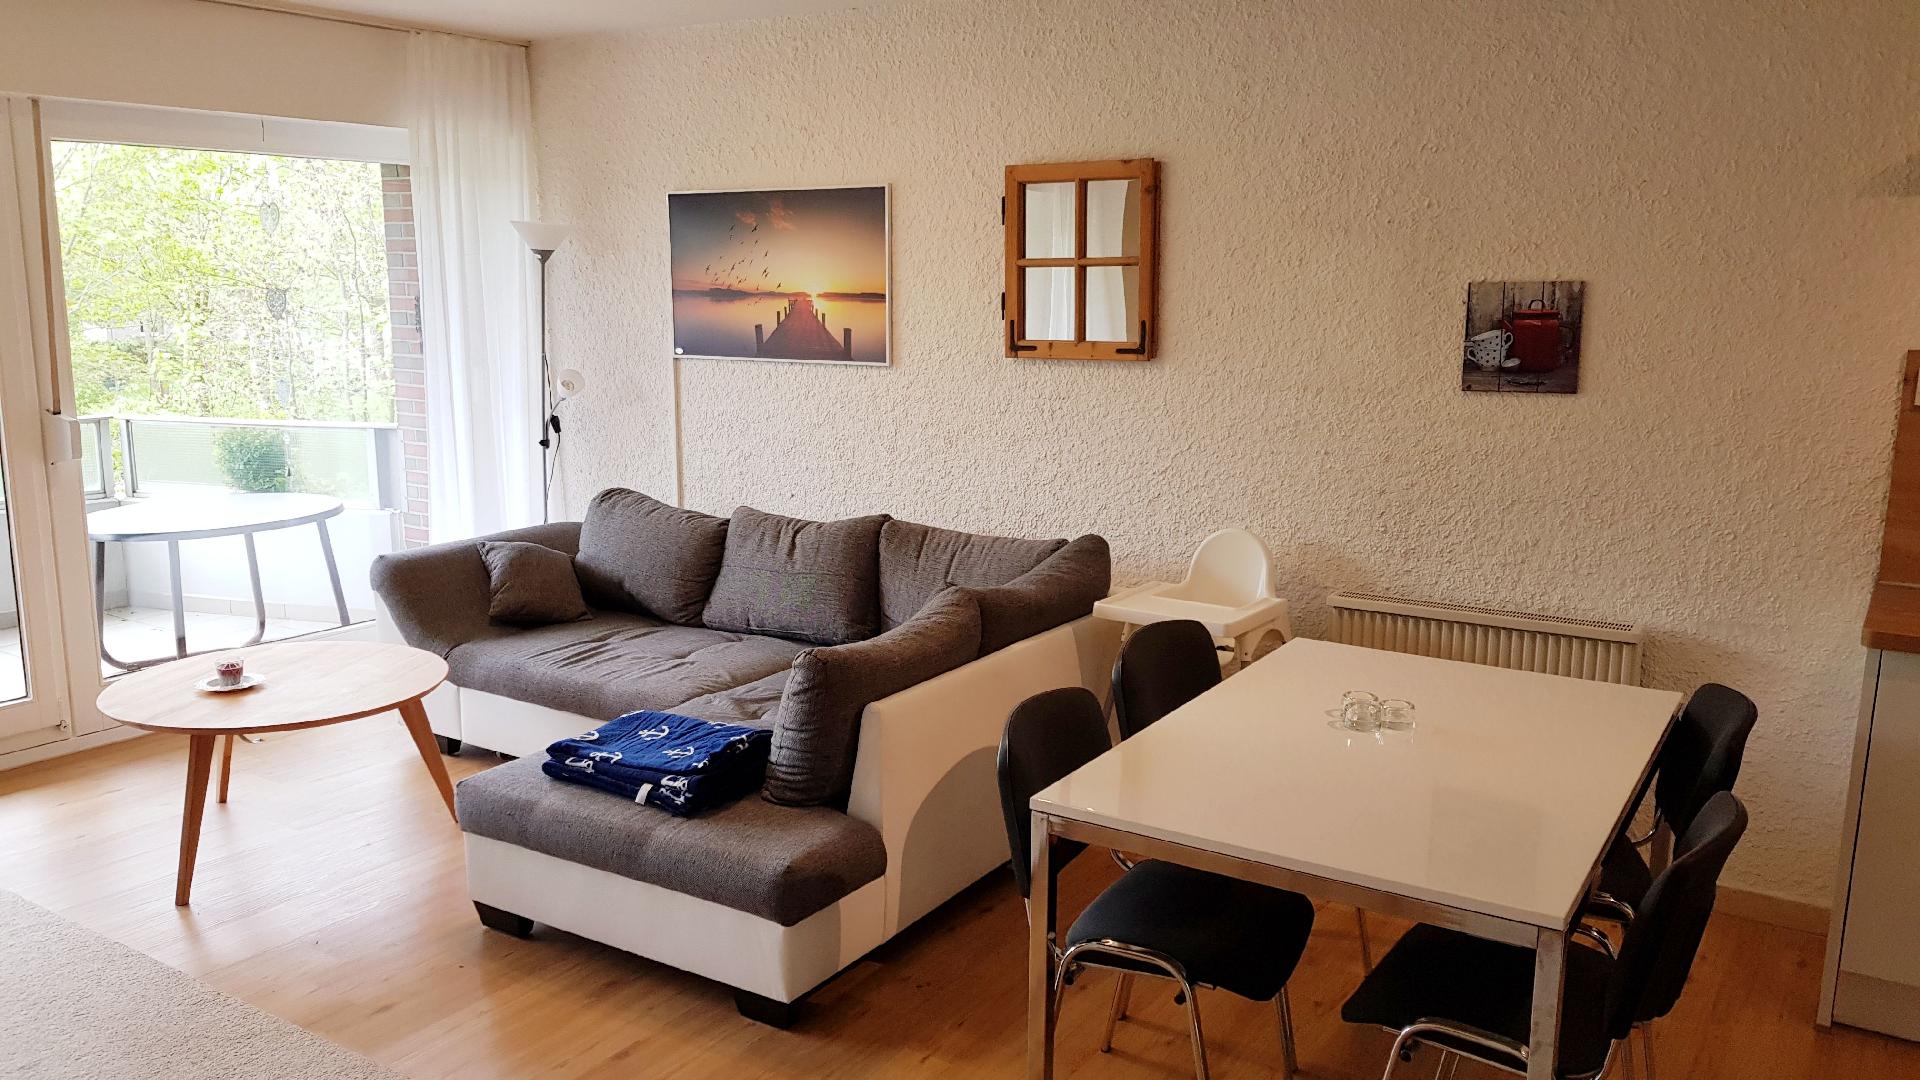 Ferienwohnung für 4 Personen ca. 52 m² i Ferienwohnung in Niedersachsen